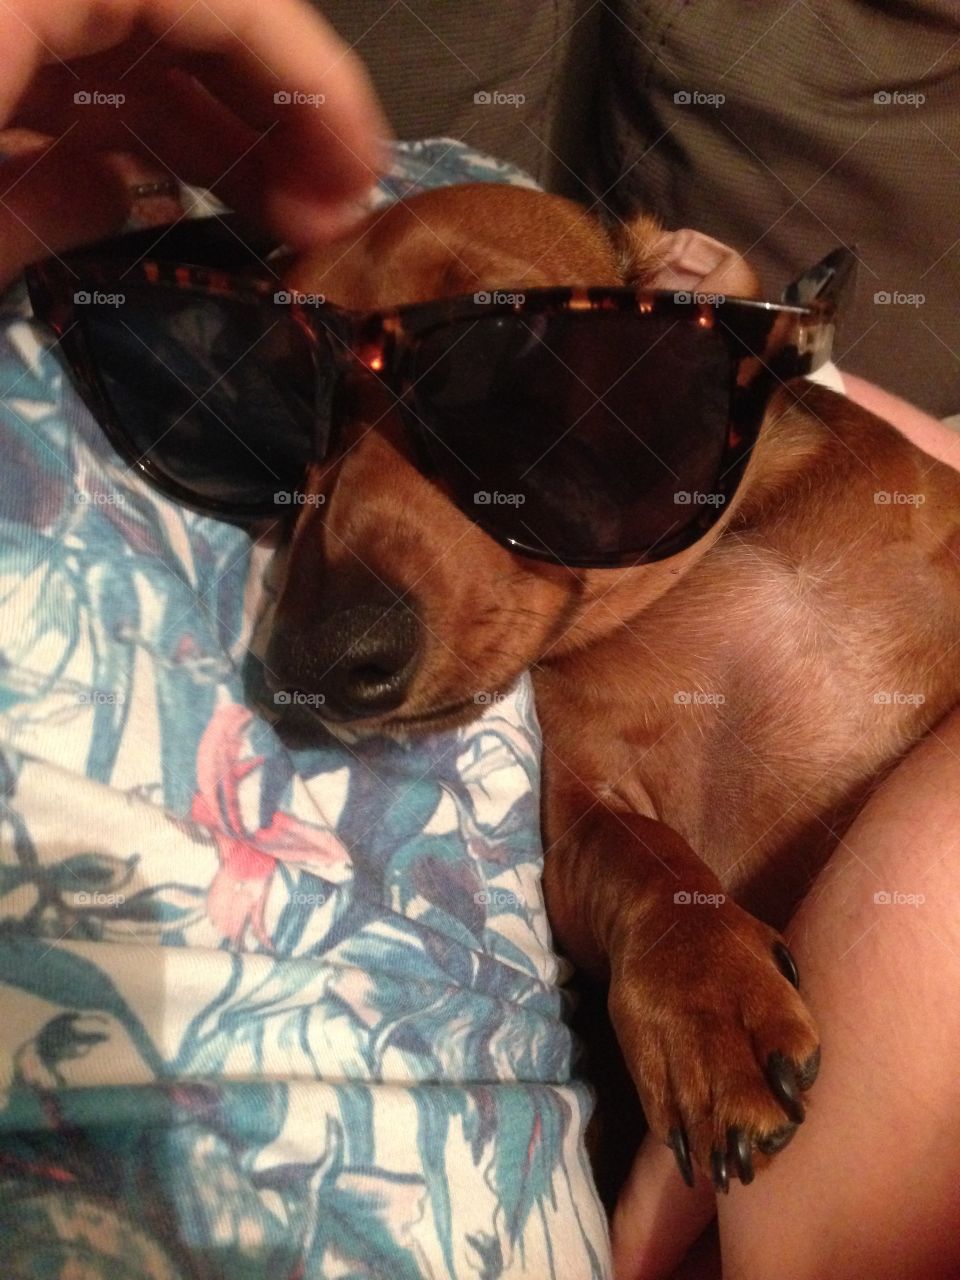 Dachshund wearing sunglasses